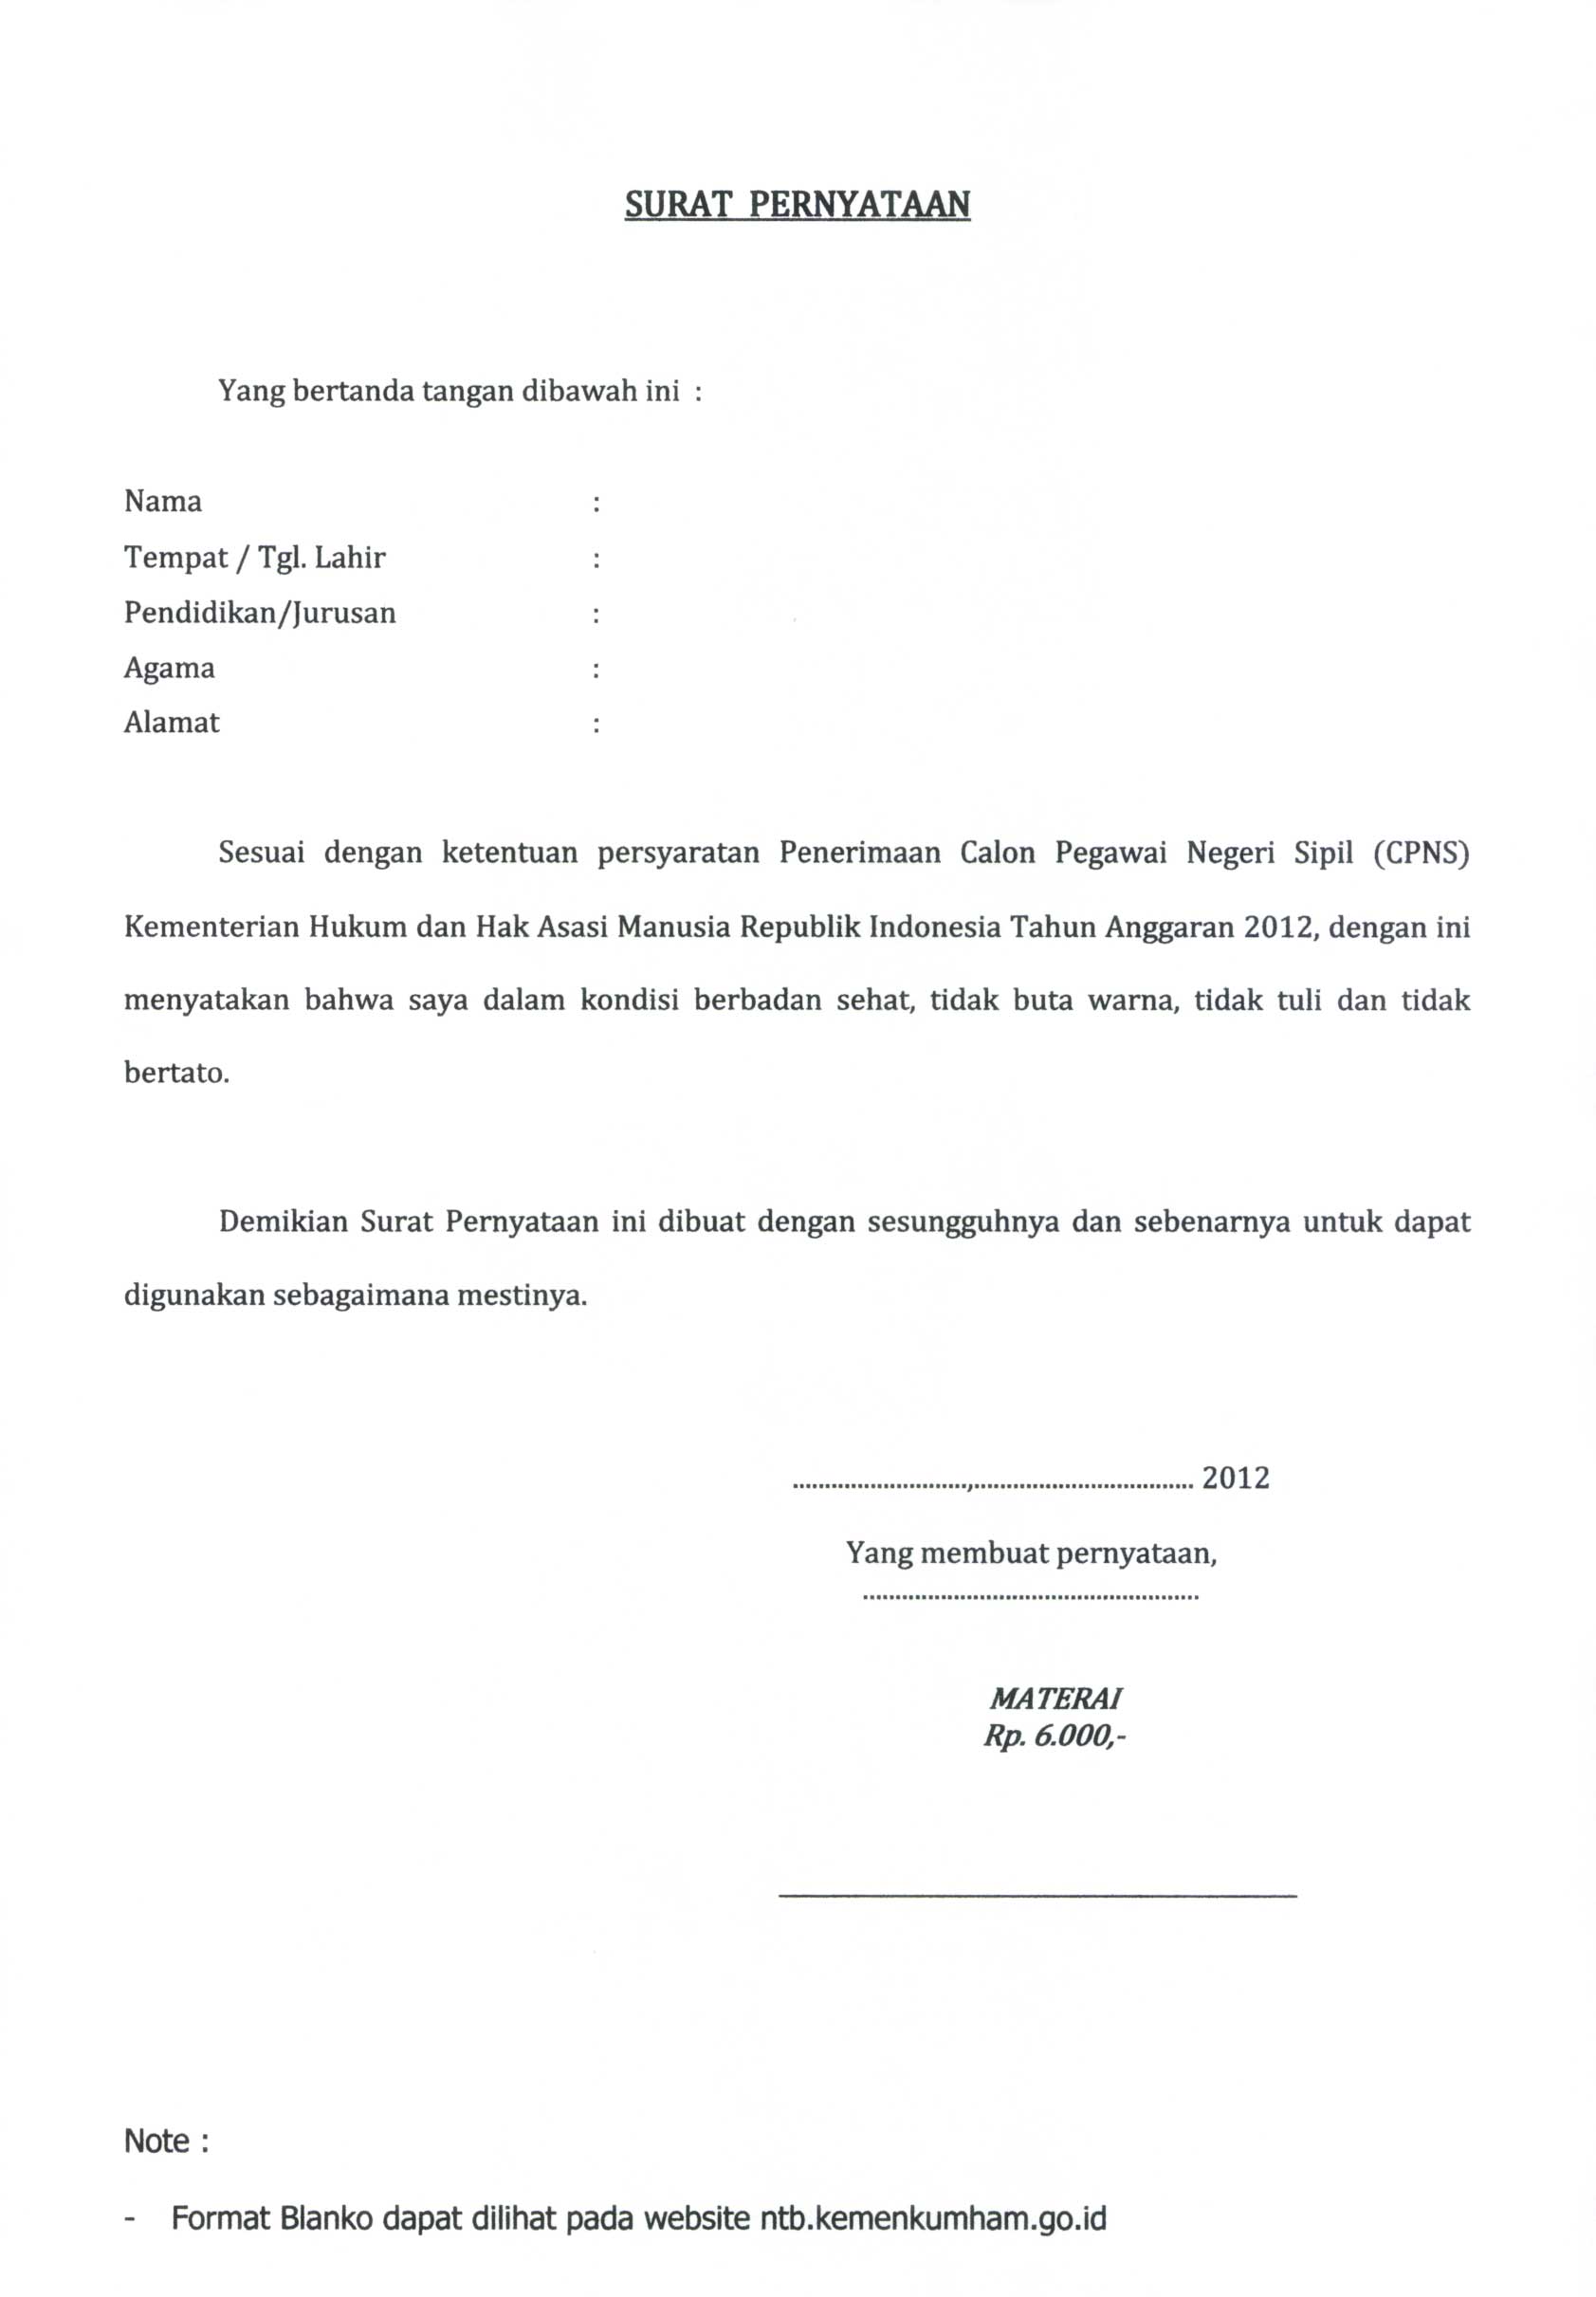 contoh surat lamaran dan surat pernyataan cpns kemenkumham | Kangbudhi 